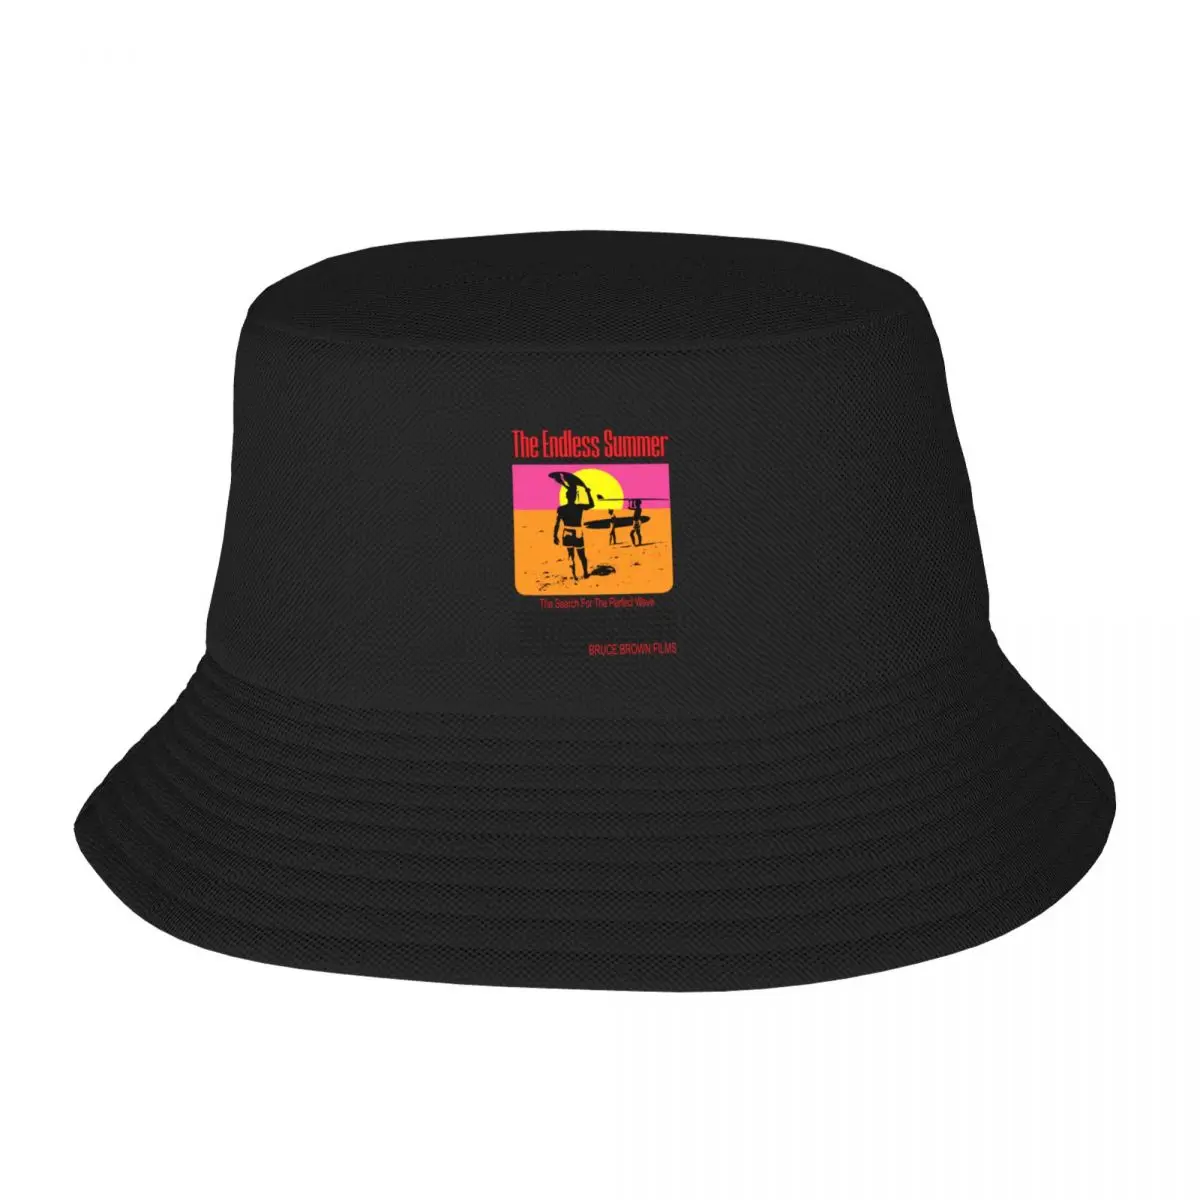 Ndless summer original movie bucket hat fashion beach derby hat horse hat hood designer thumb200